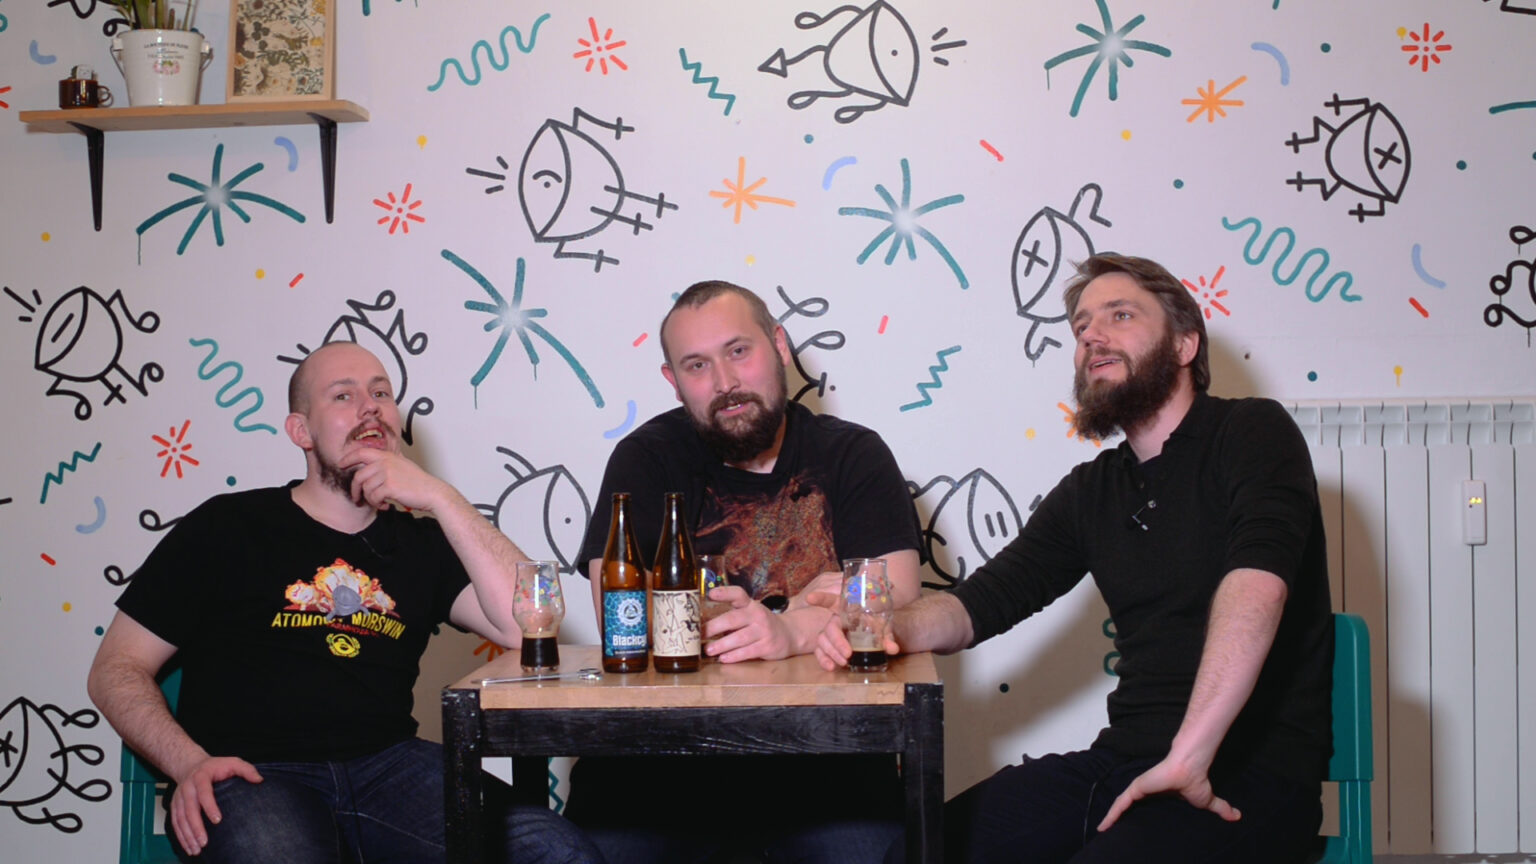 Od lewej: Łukasz Szymański, Artur Karpiński i Grzegorz Stachurski siedzą przy stoliku w Dżungla Cafe, na stole mają 2 butelki piw i 3 szklanki.